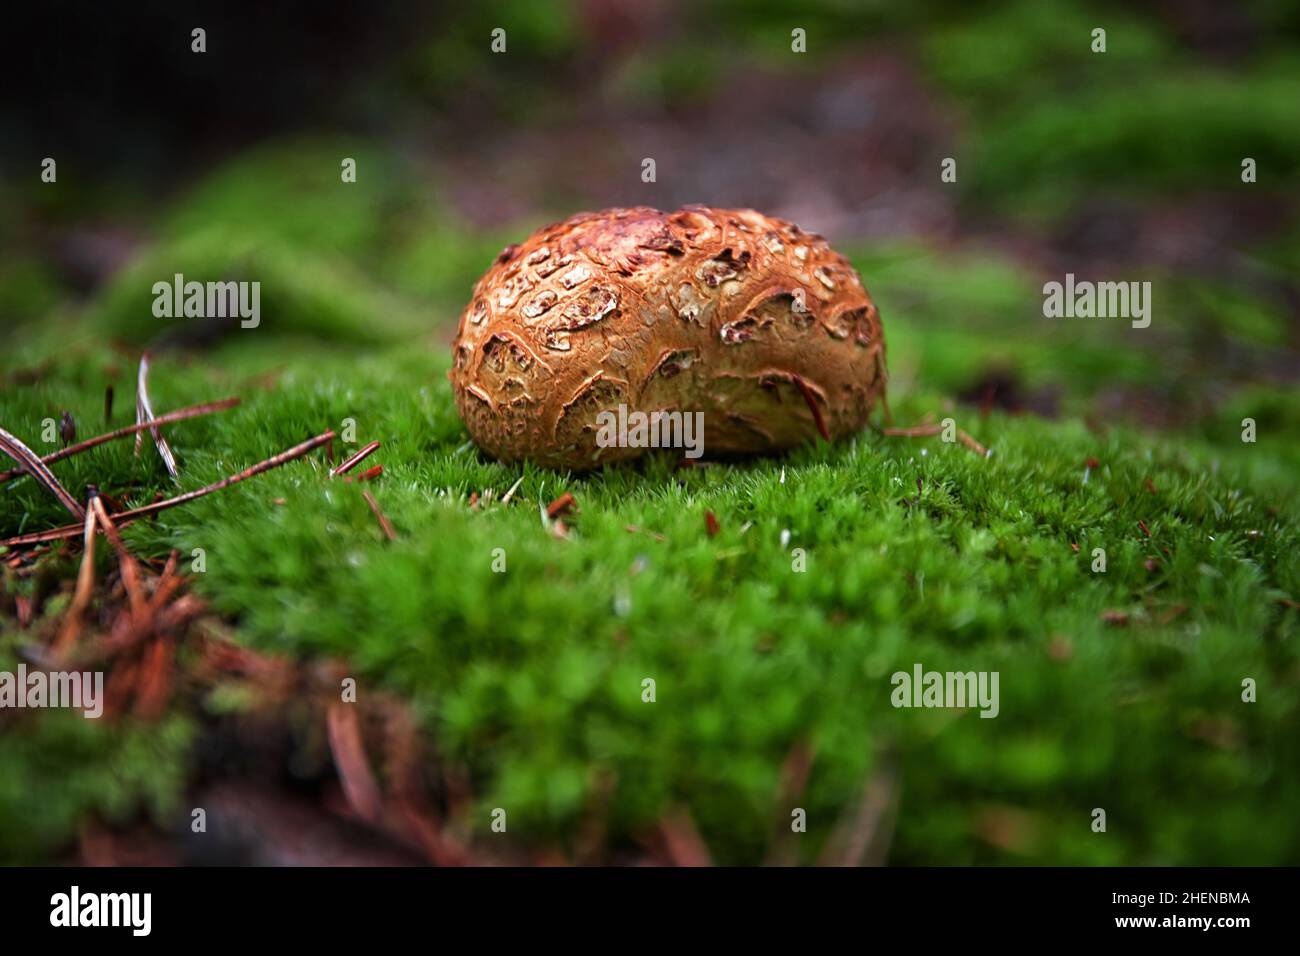 funghi incommestibili nel bosco tra muschi, rami e aghi di conifere Foto Stock